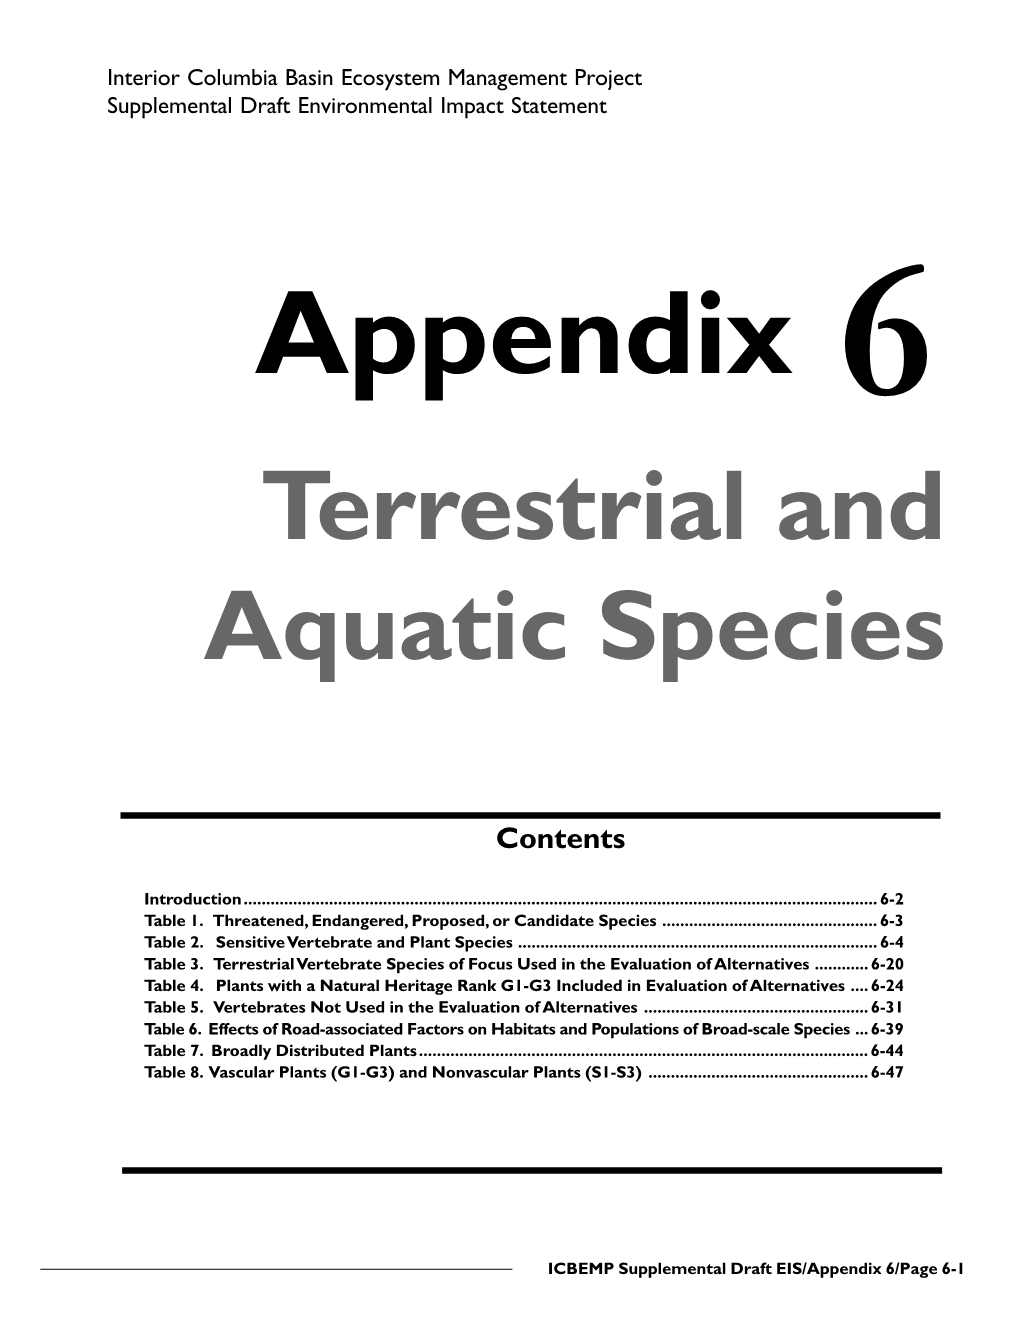 Appendix 6 Terrestrial and Aquatic Species